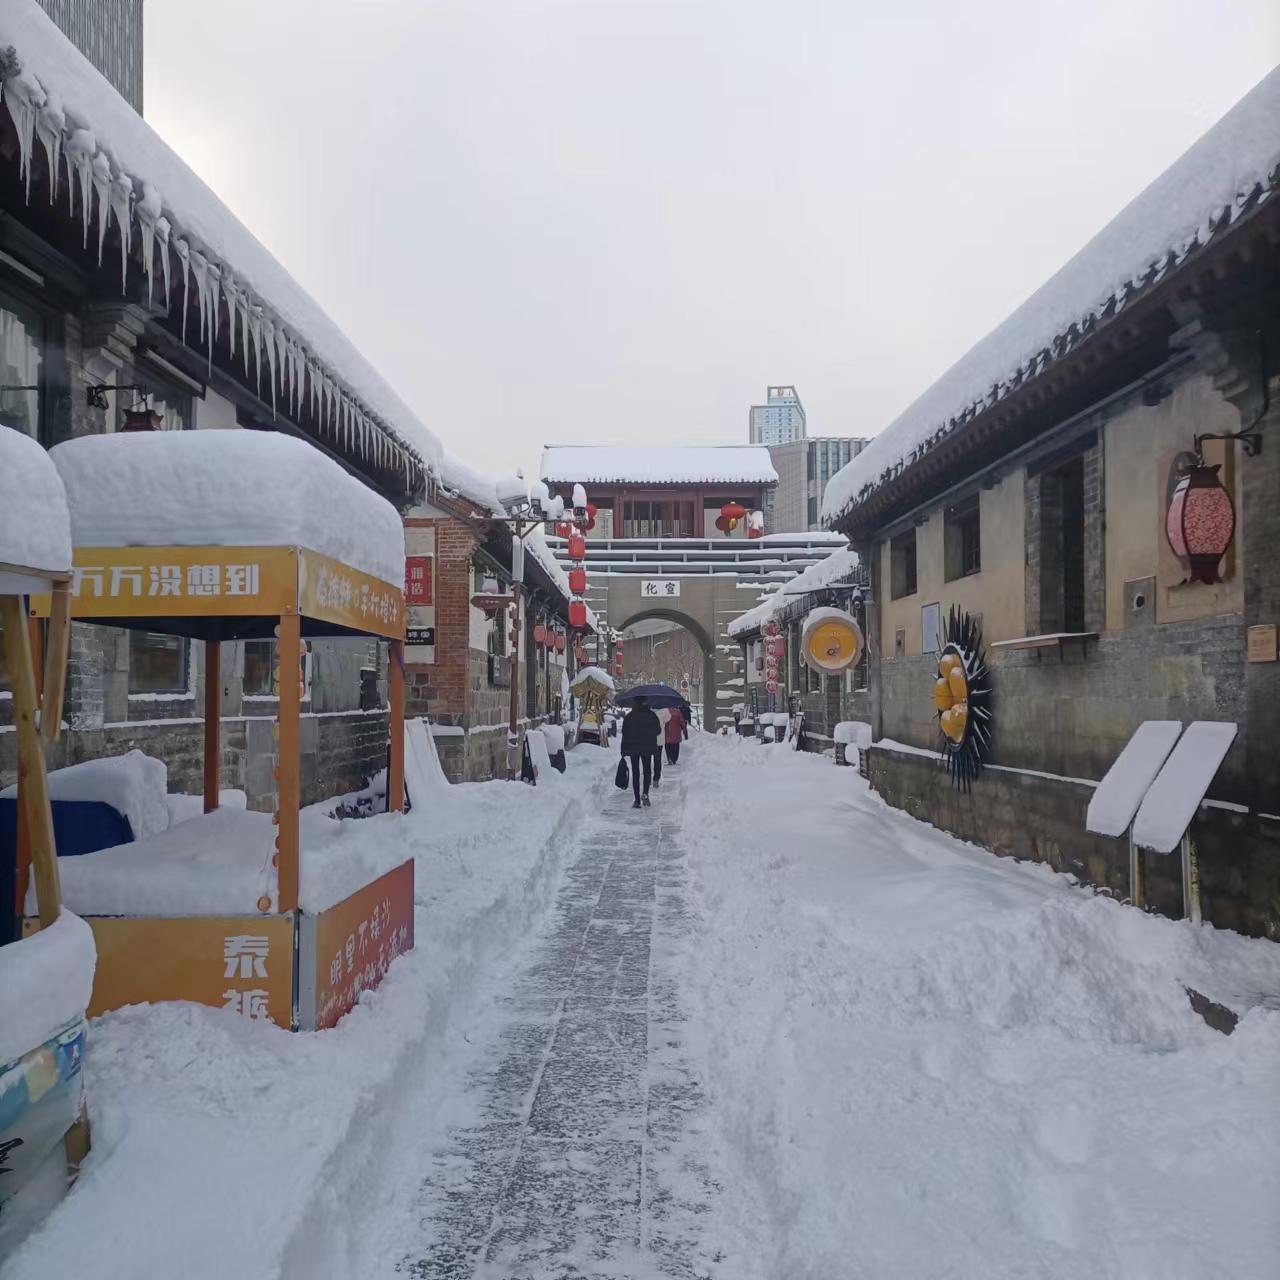 اسان جي شهر ۾ تمام گهڻي برفباري ٿي رهي آهي